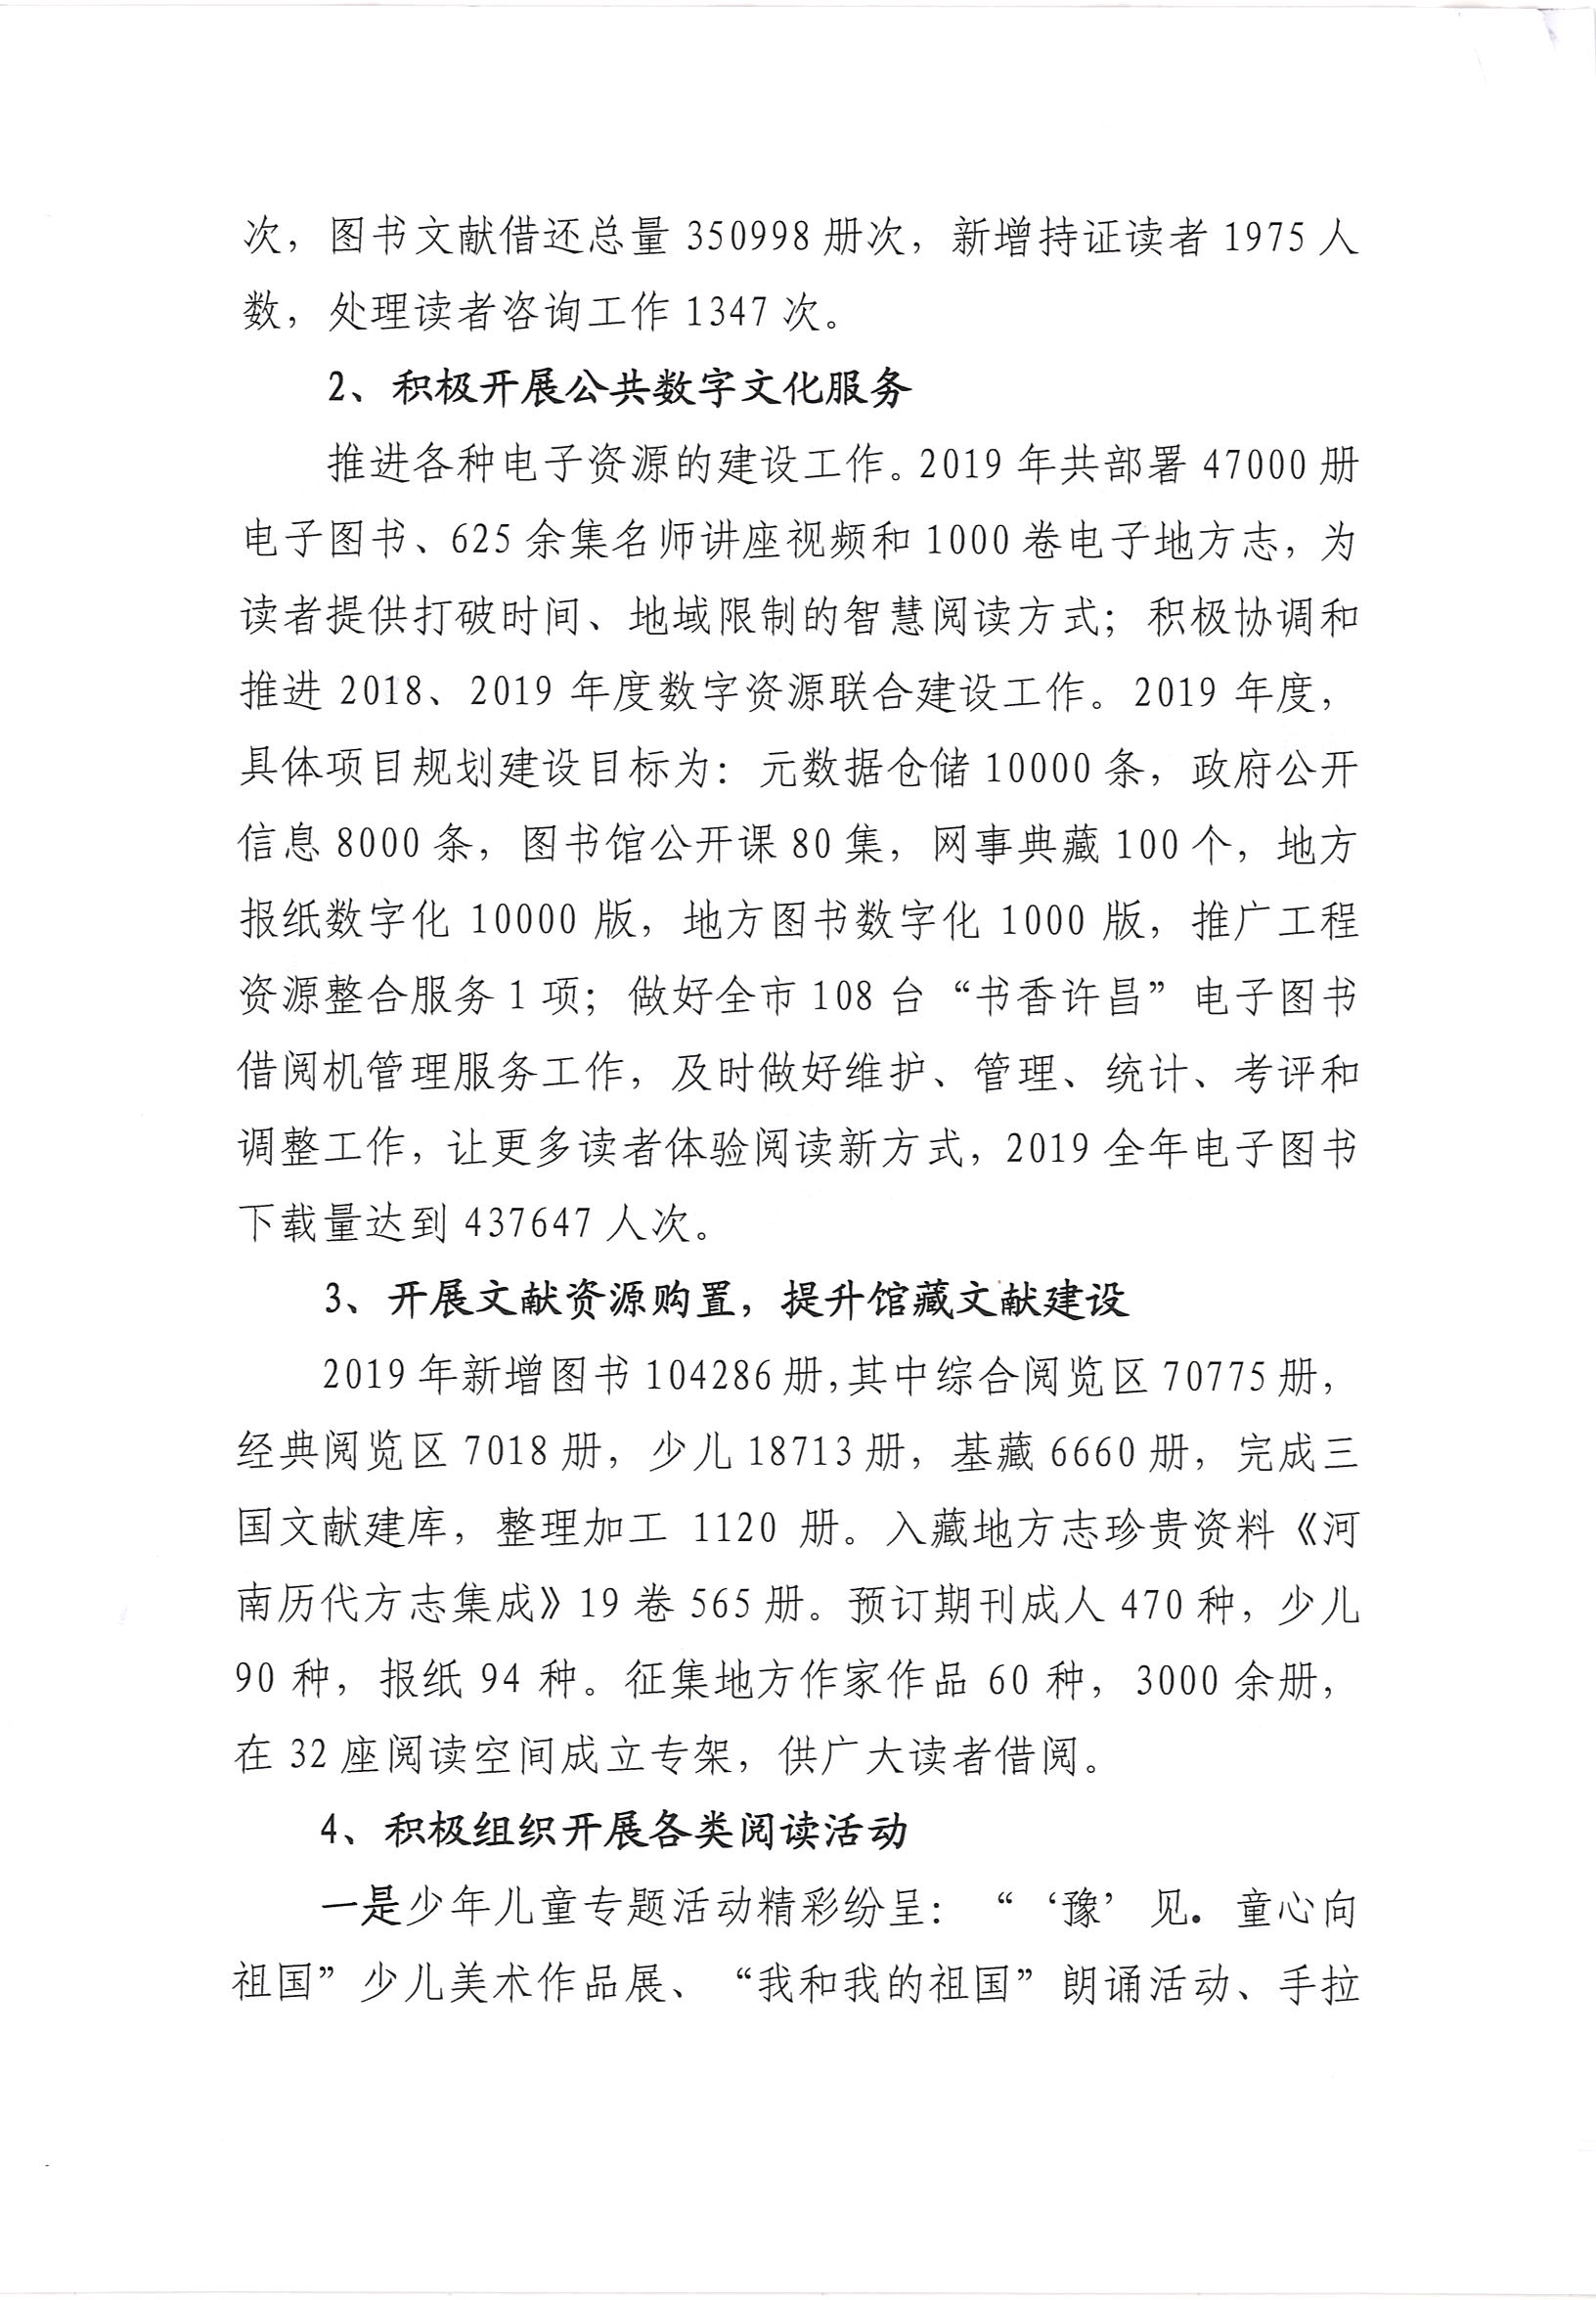 许昌市图书馆2019年度公共文化服务开展情况年报_部分2.jpg